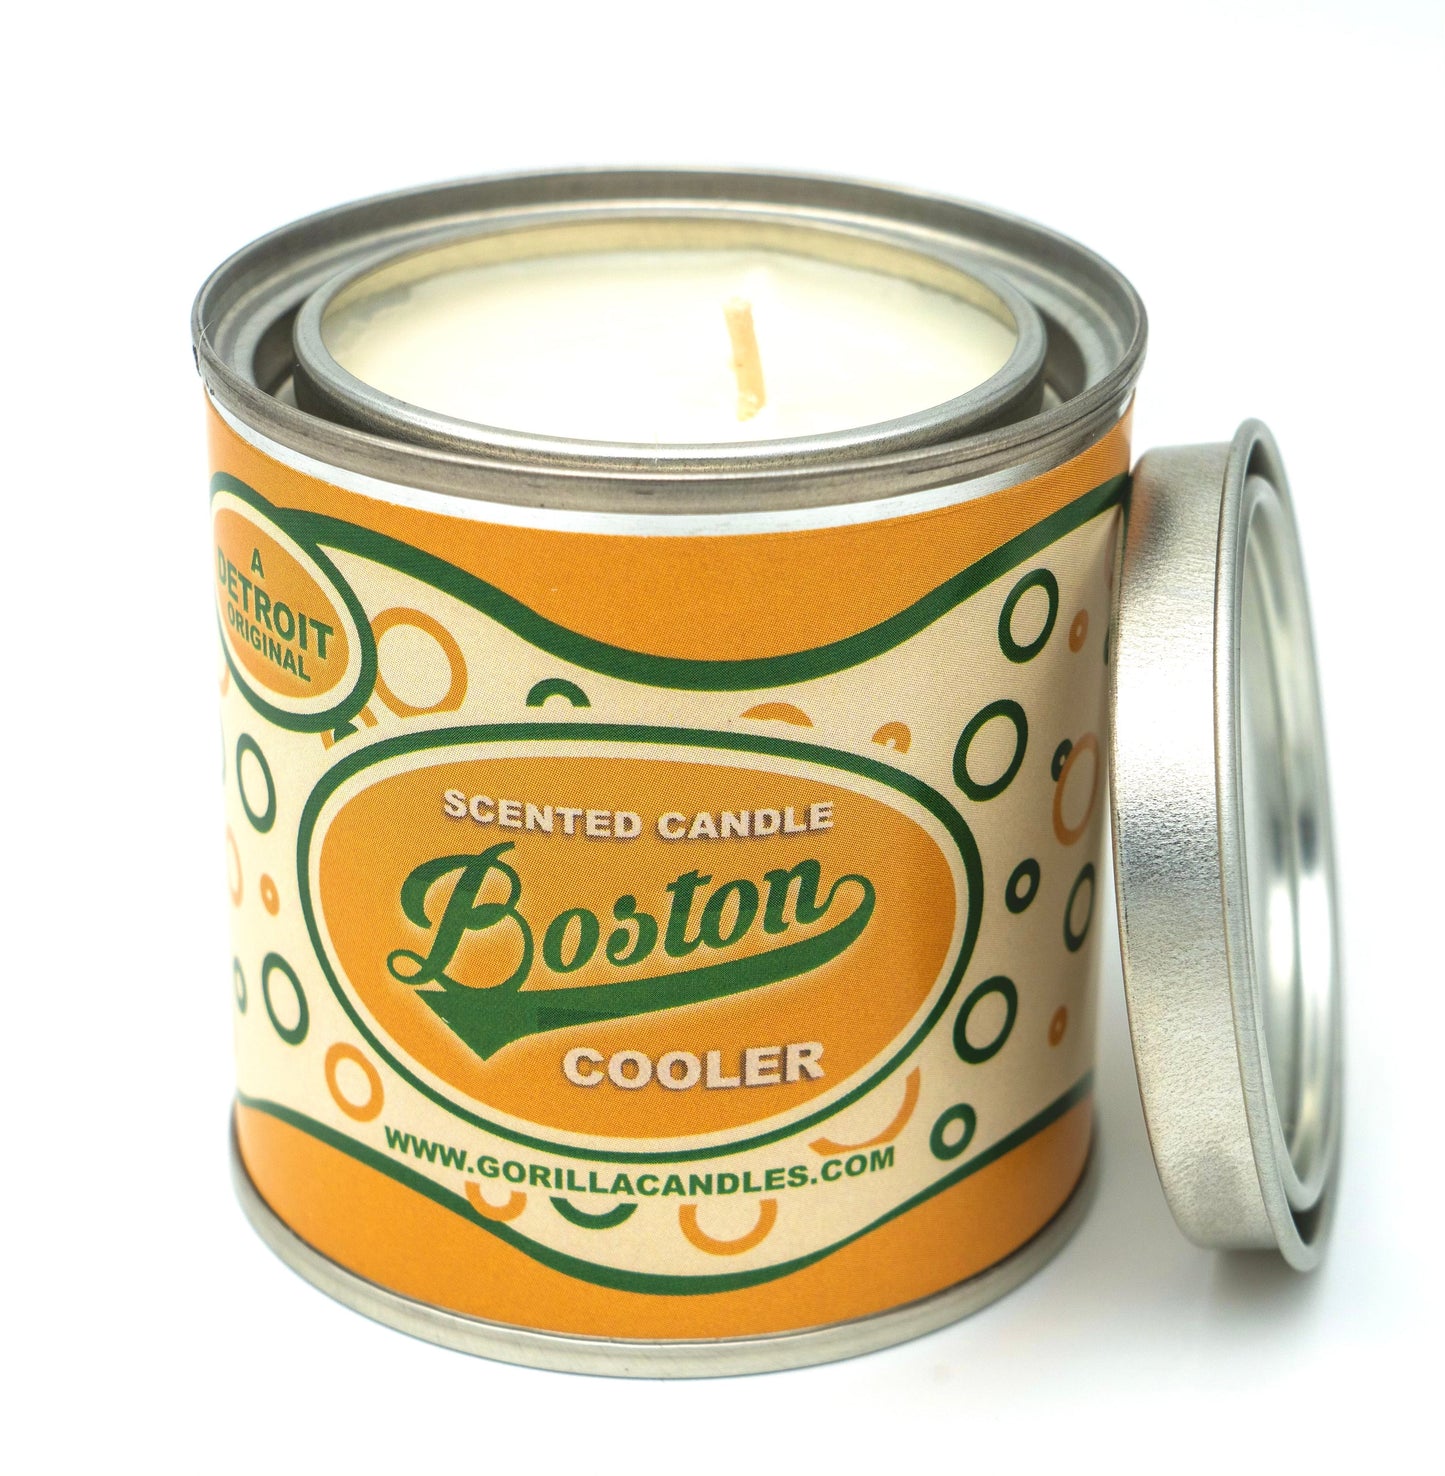 Boston Cooler a Detroit Original Candle